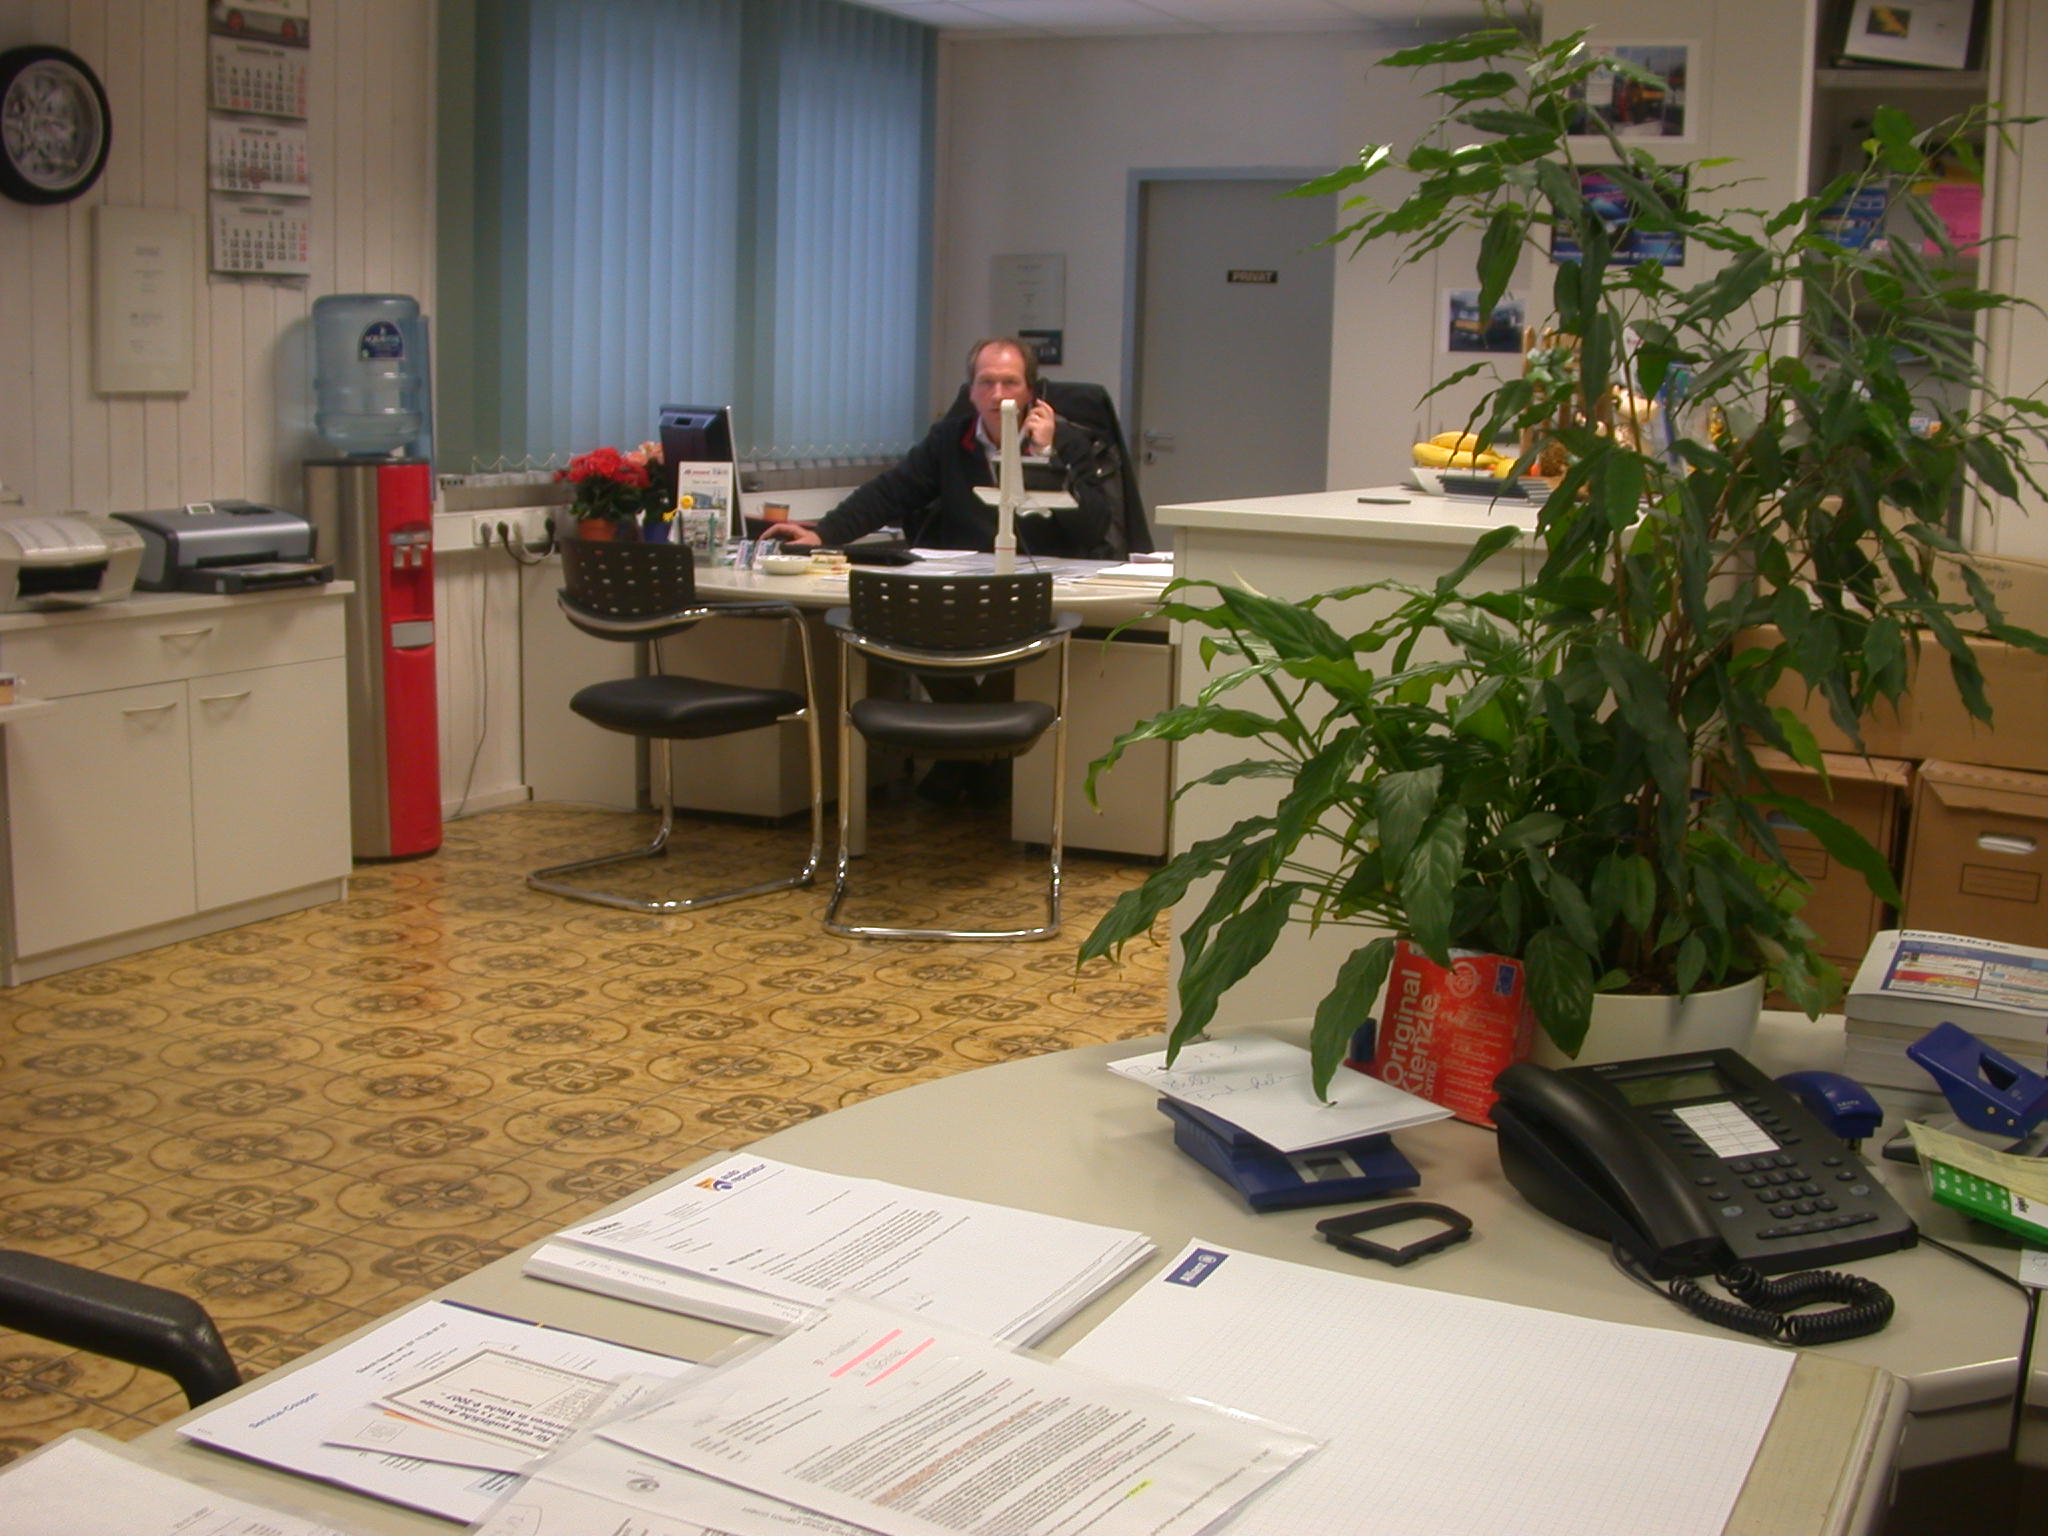 Büro und Kundenempfang von Firma Brenner in Bondorf